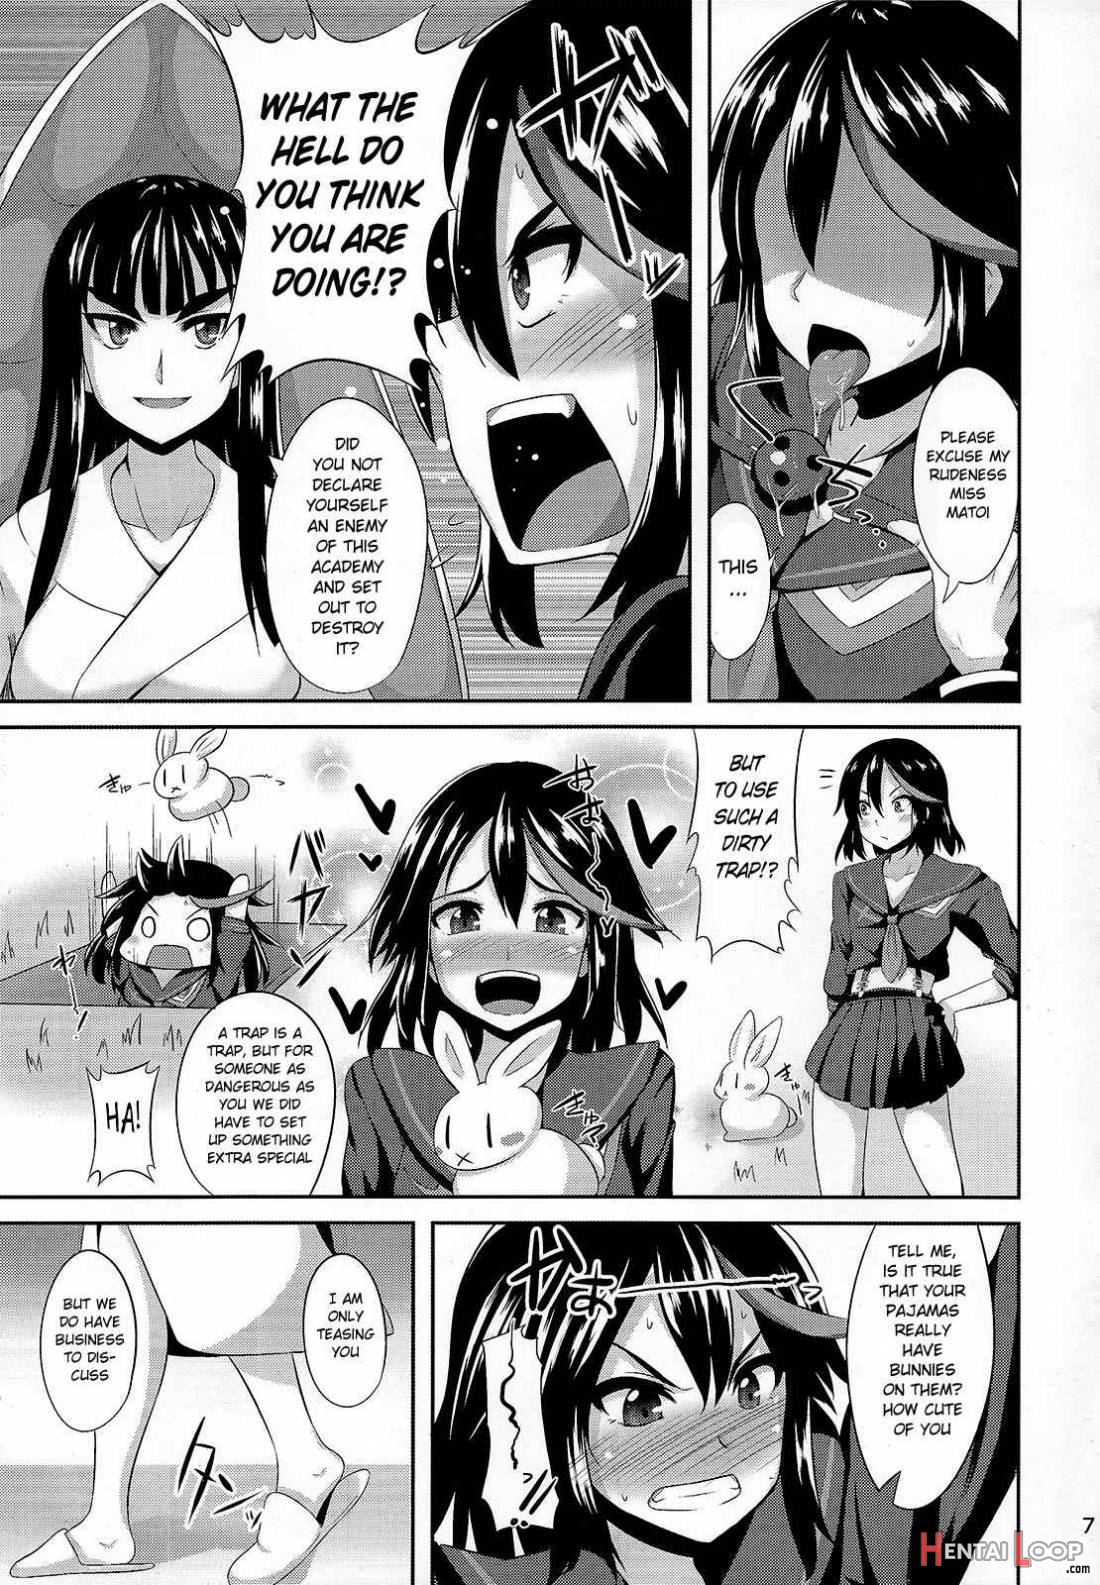 Satsuki-Ryu page 4